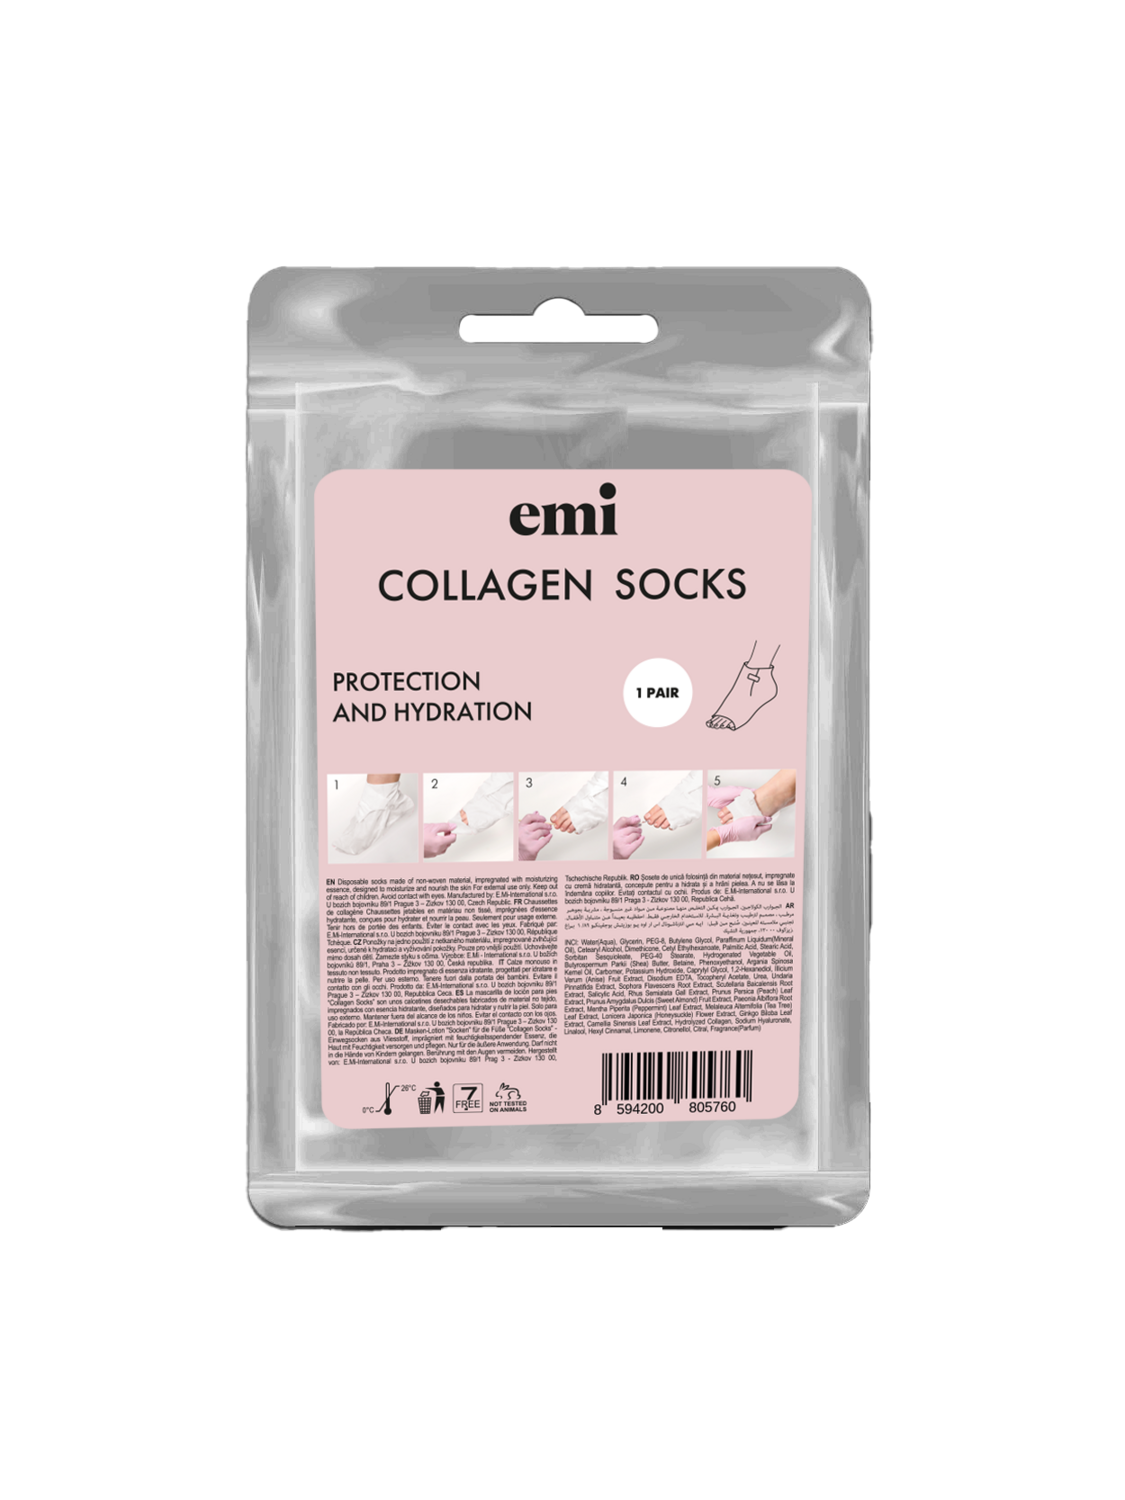 Collagen Socks, 1 pcs.